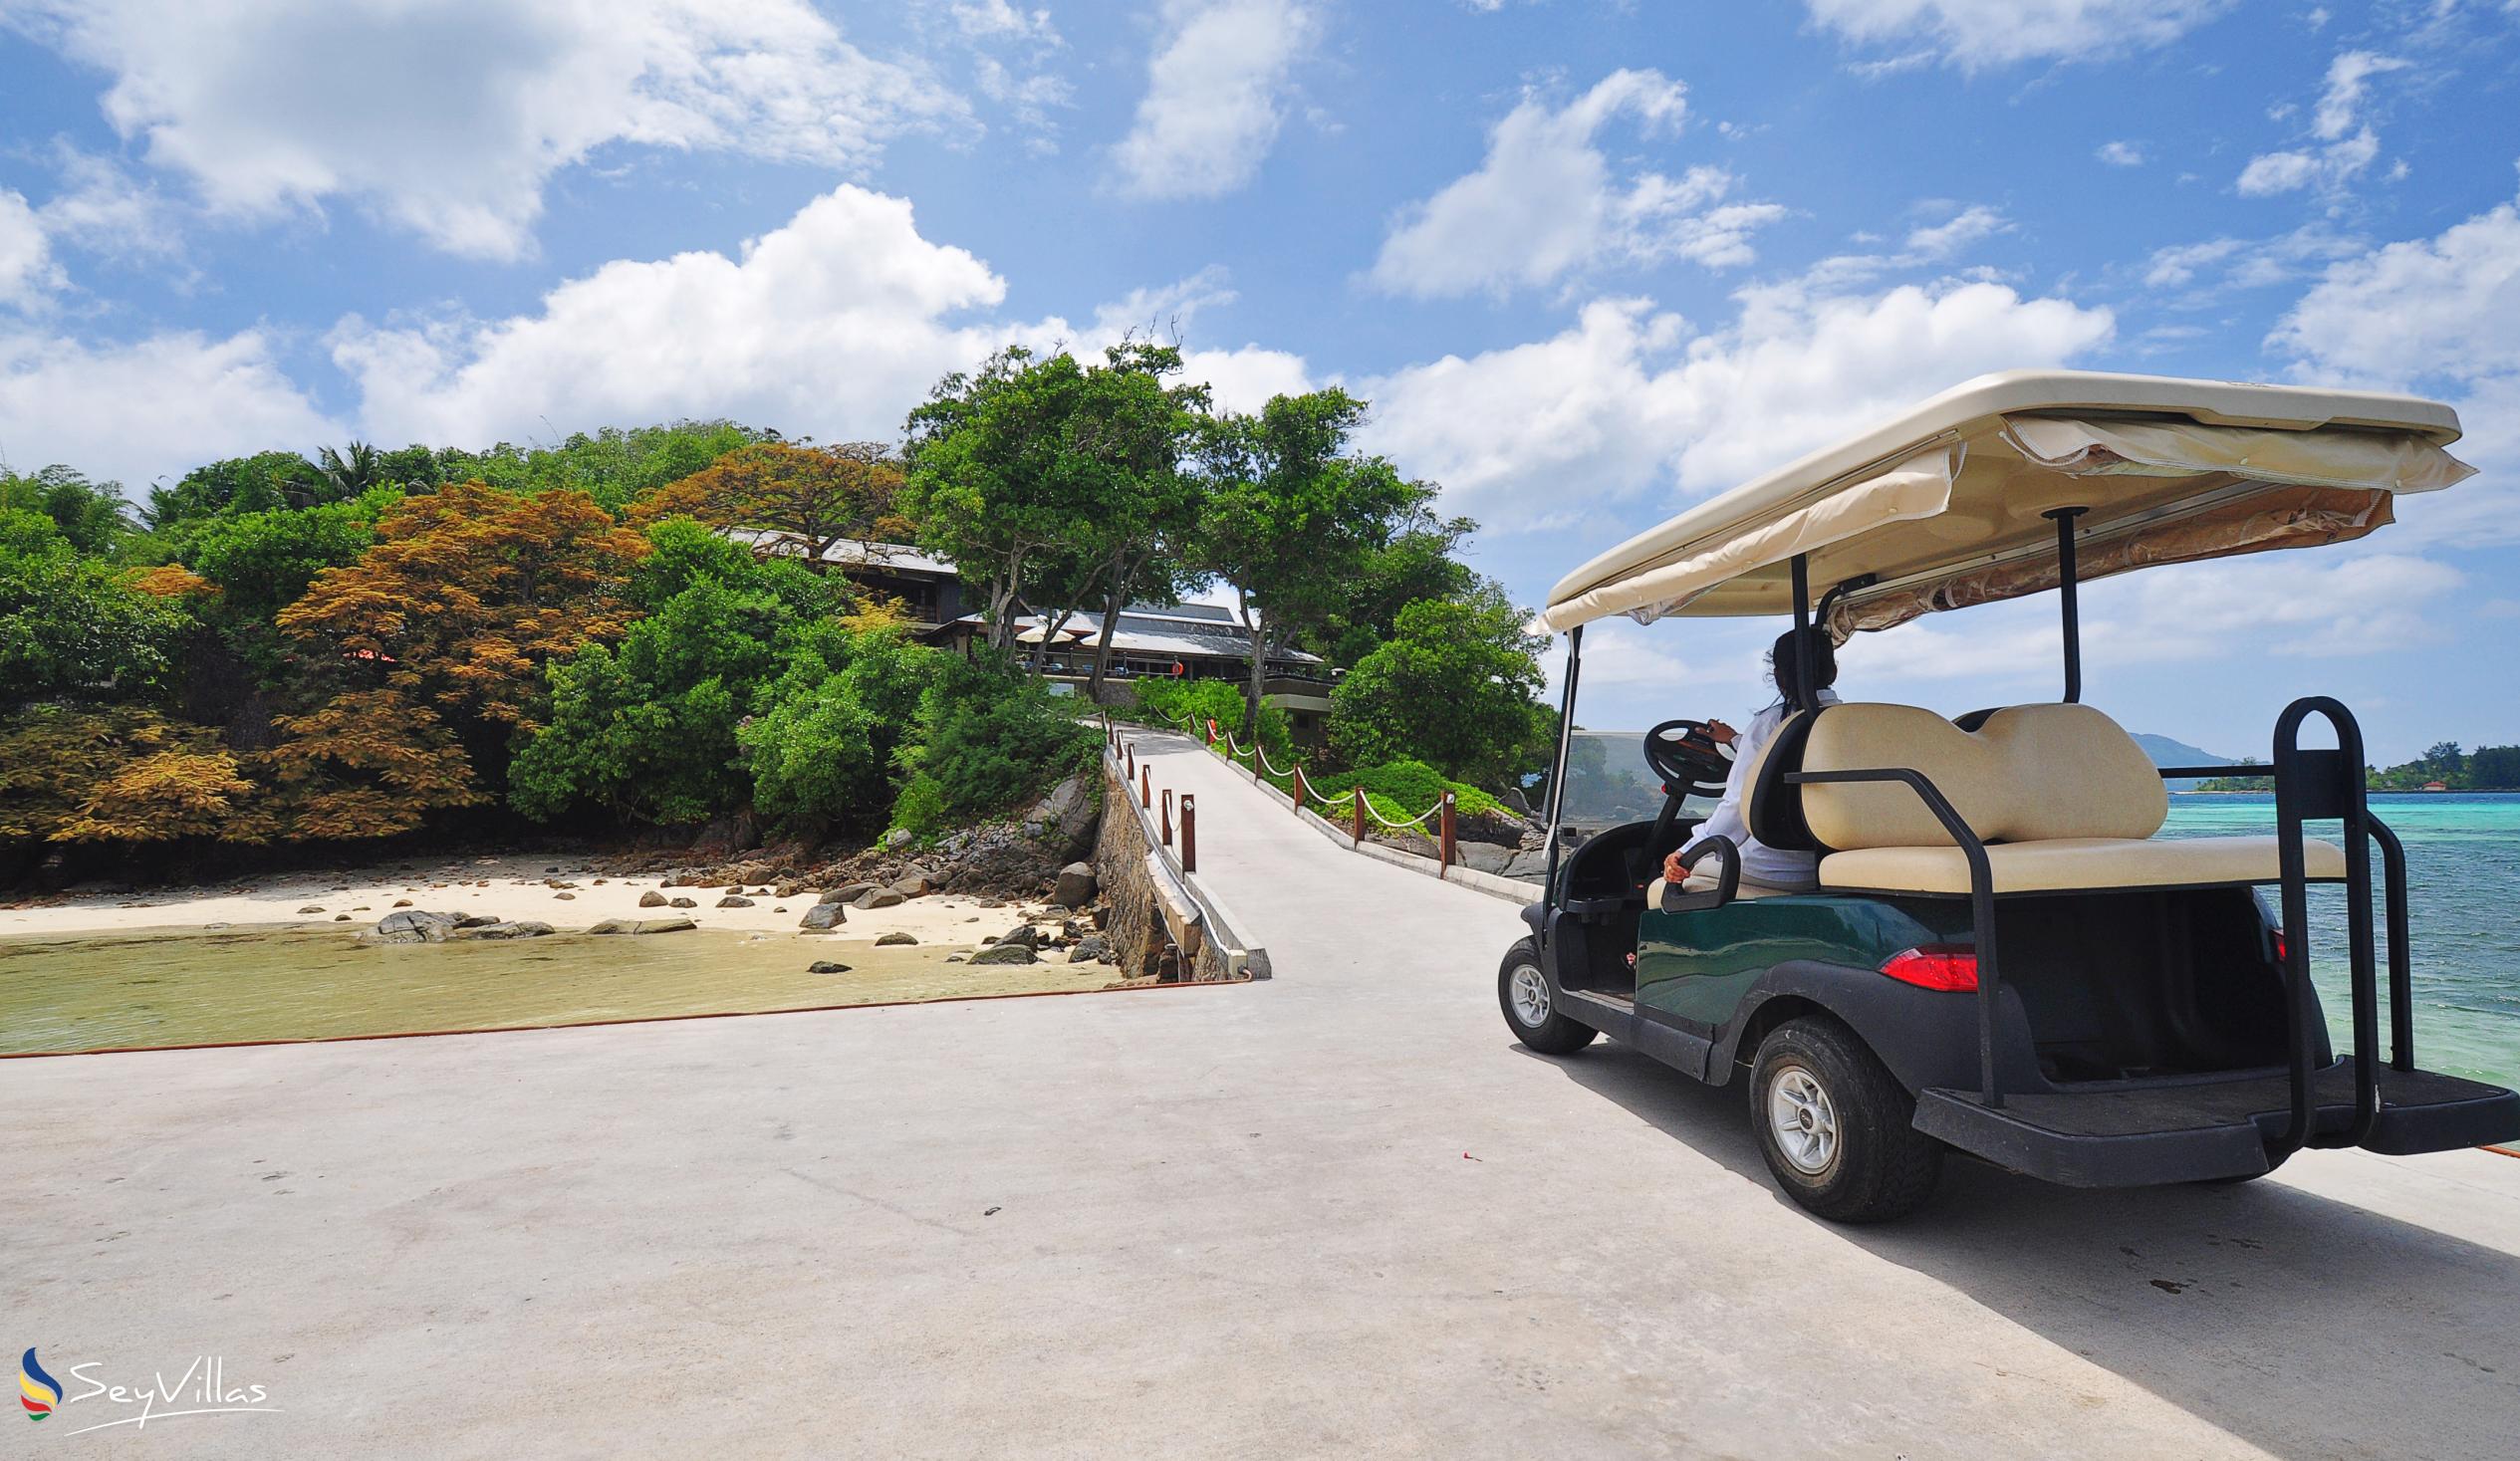 Foto 63: JA Enchanted Island Resort - Aussenbereich - Round Island (Seychellen)